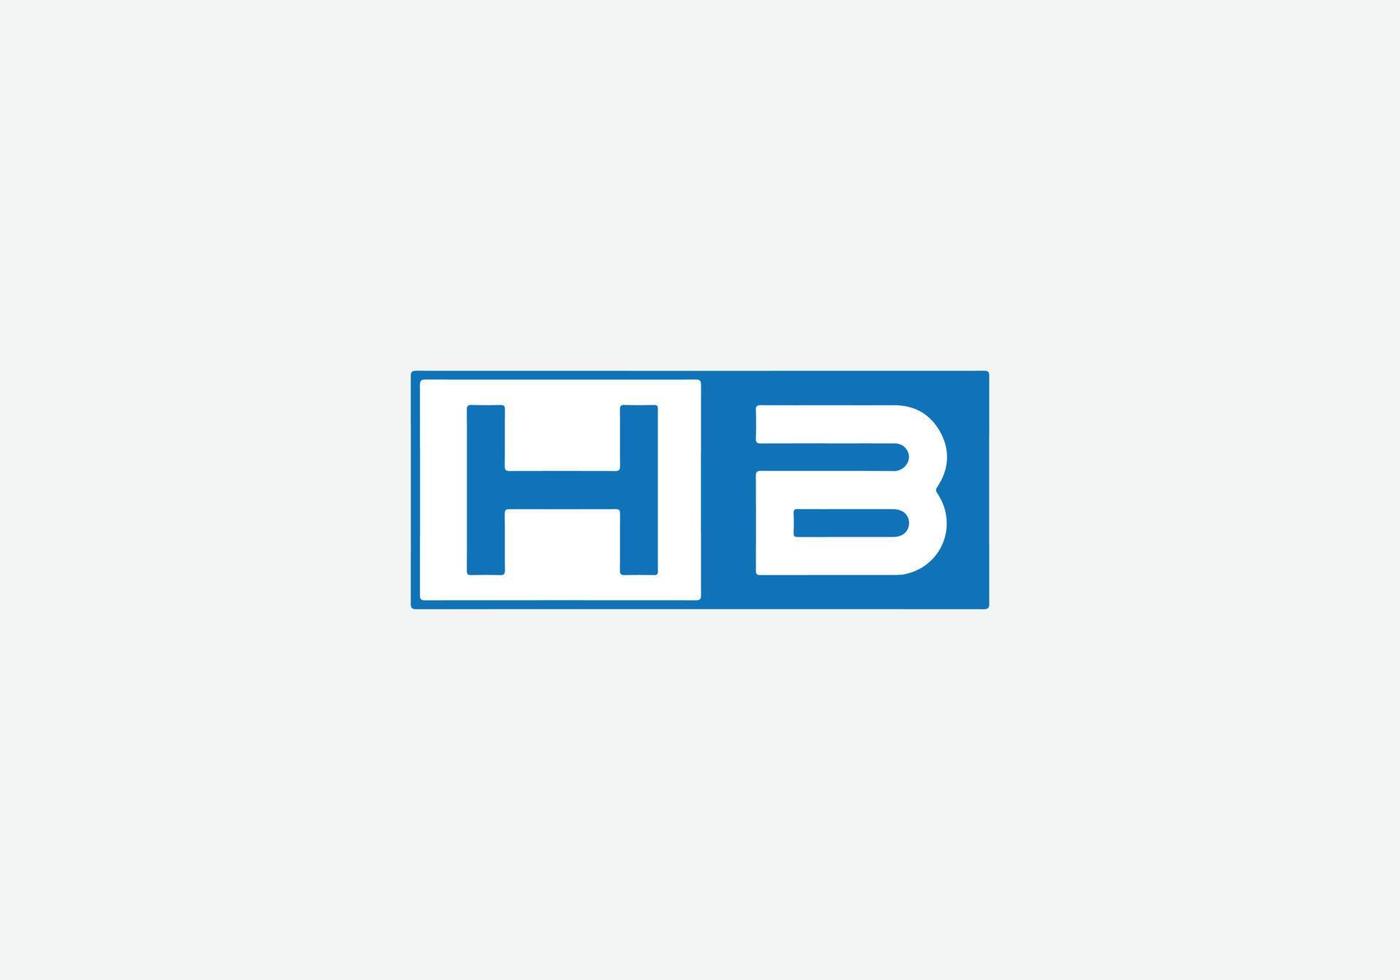 abstrakter hb-buchstabe kennzeichnet minimalistisches logo-design vektor